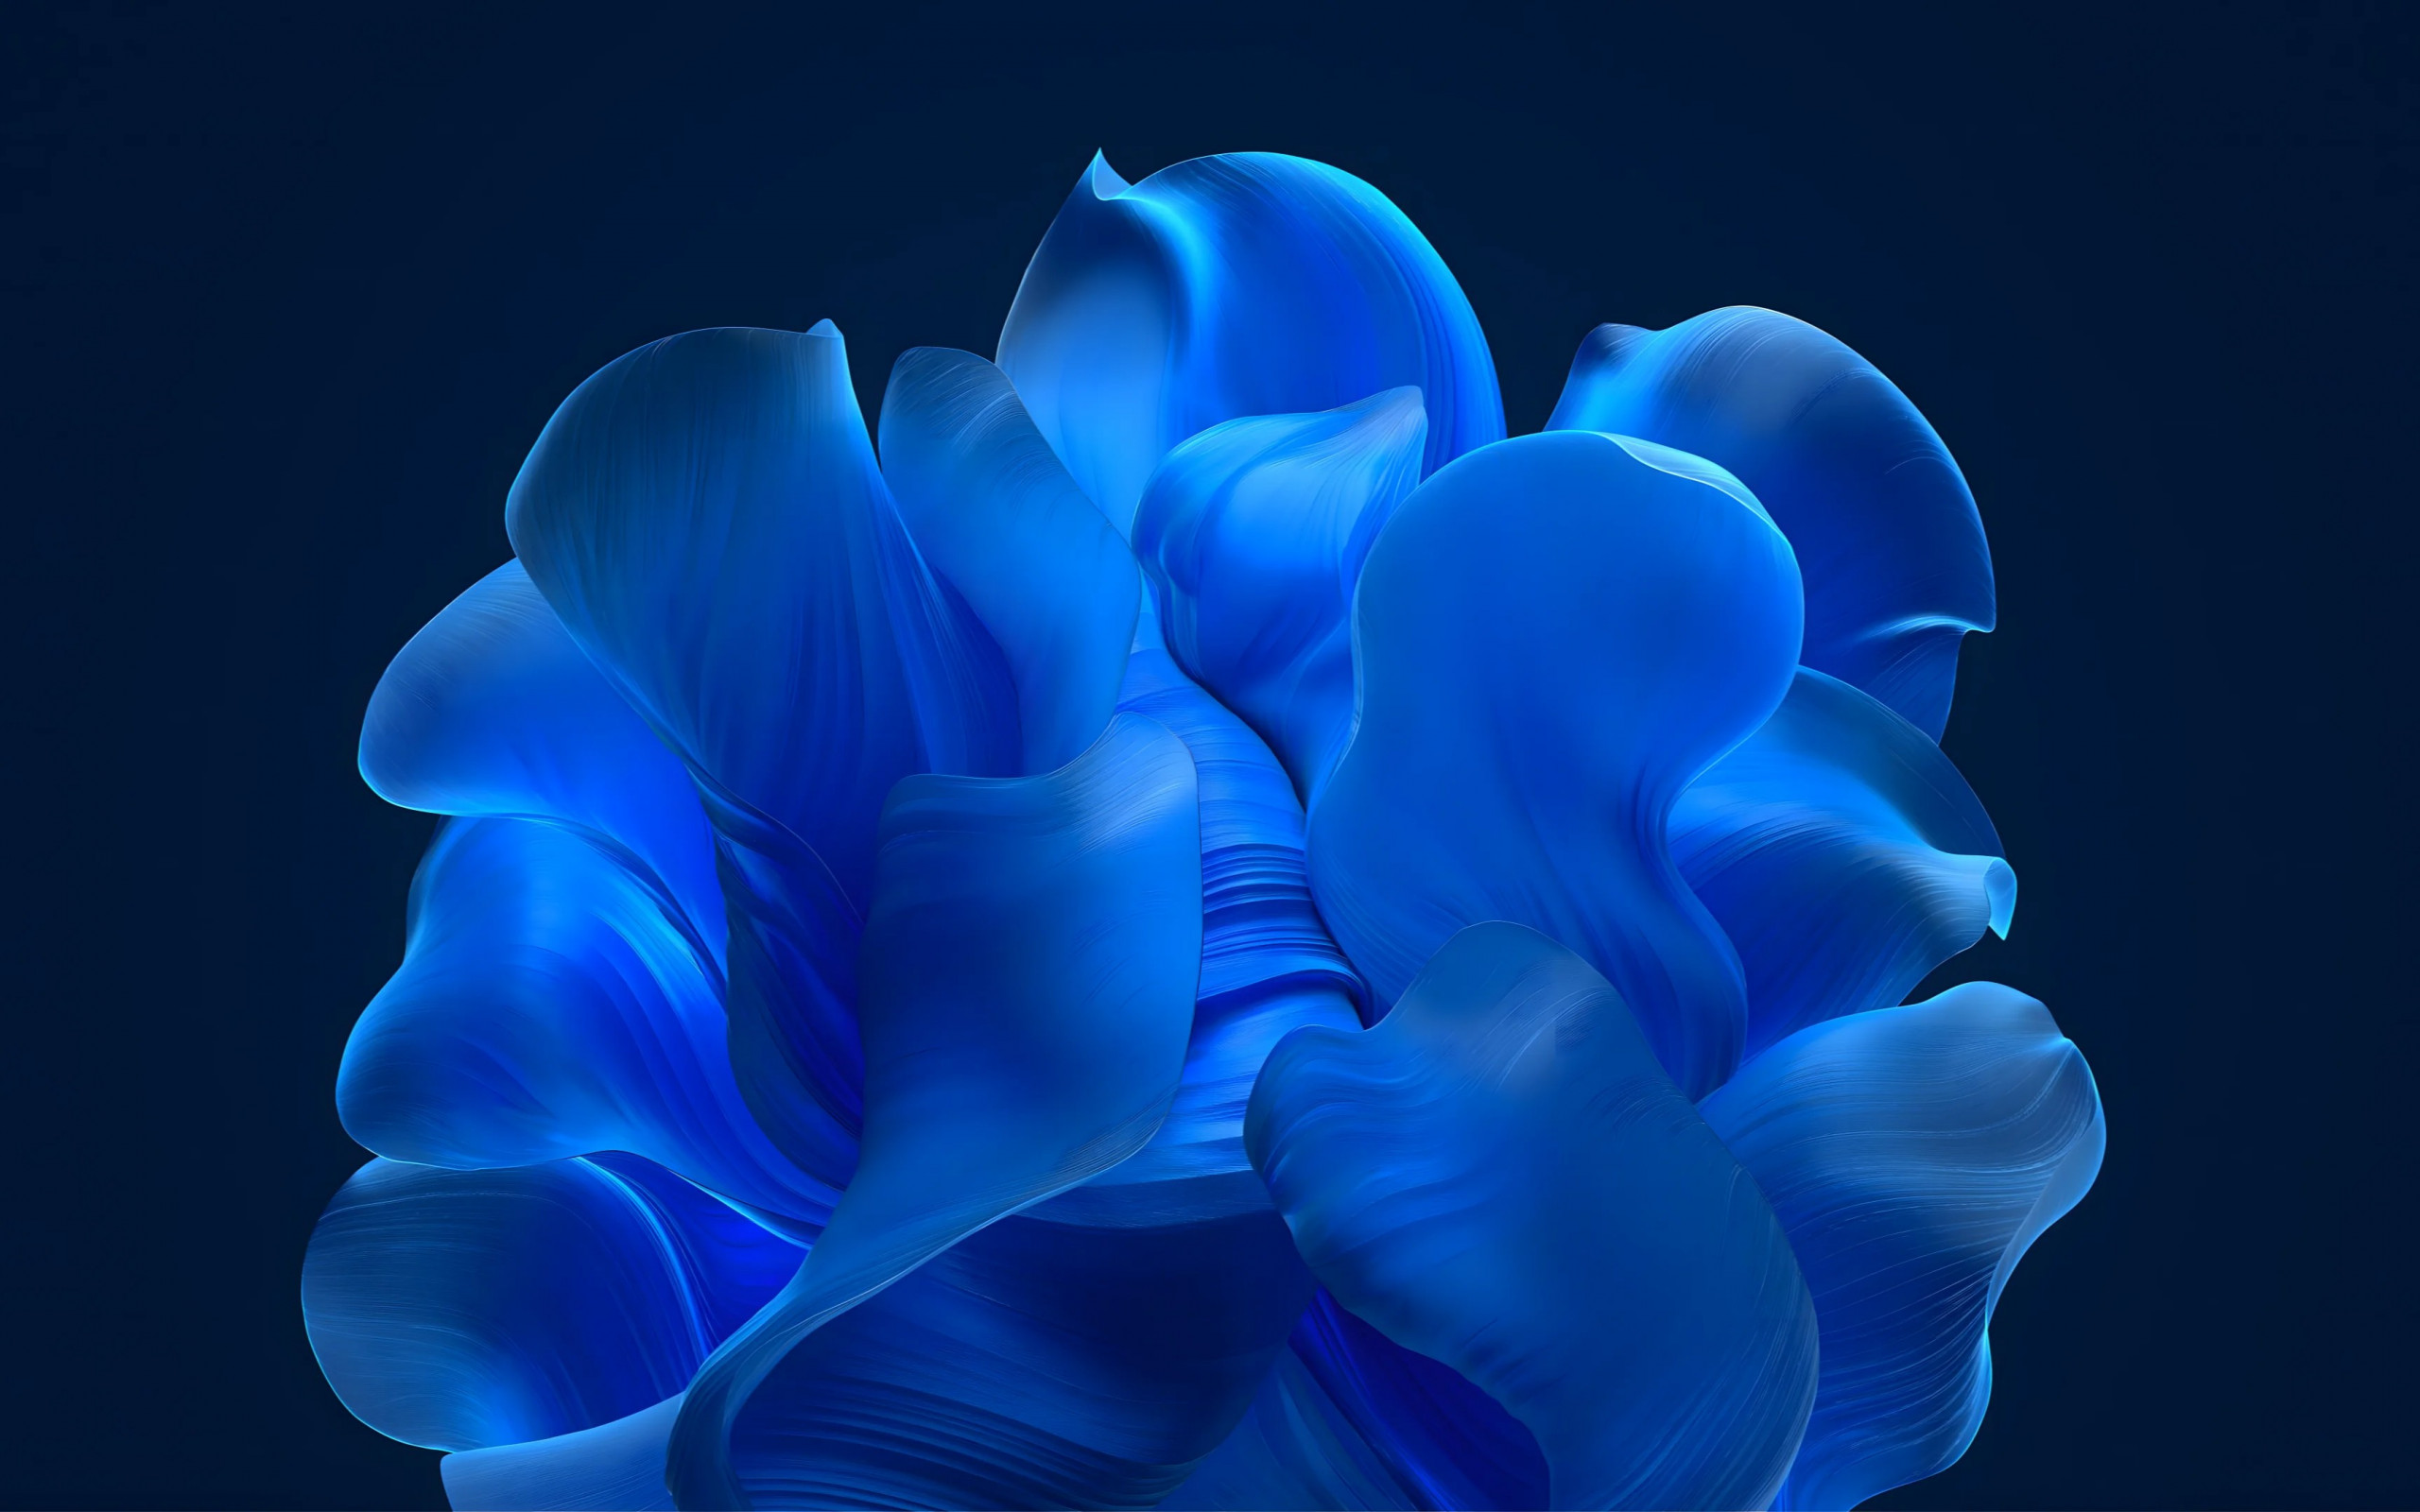 The blue petals wallpaper 2560x1600